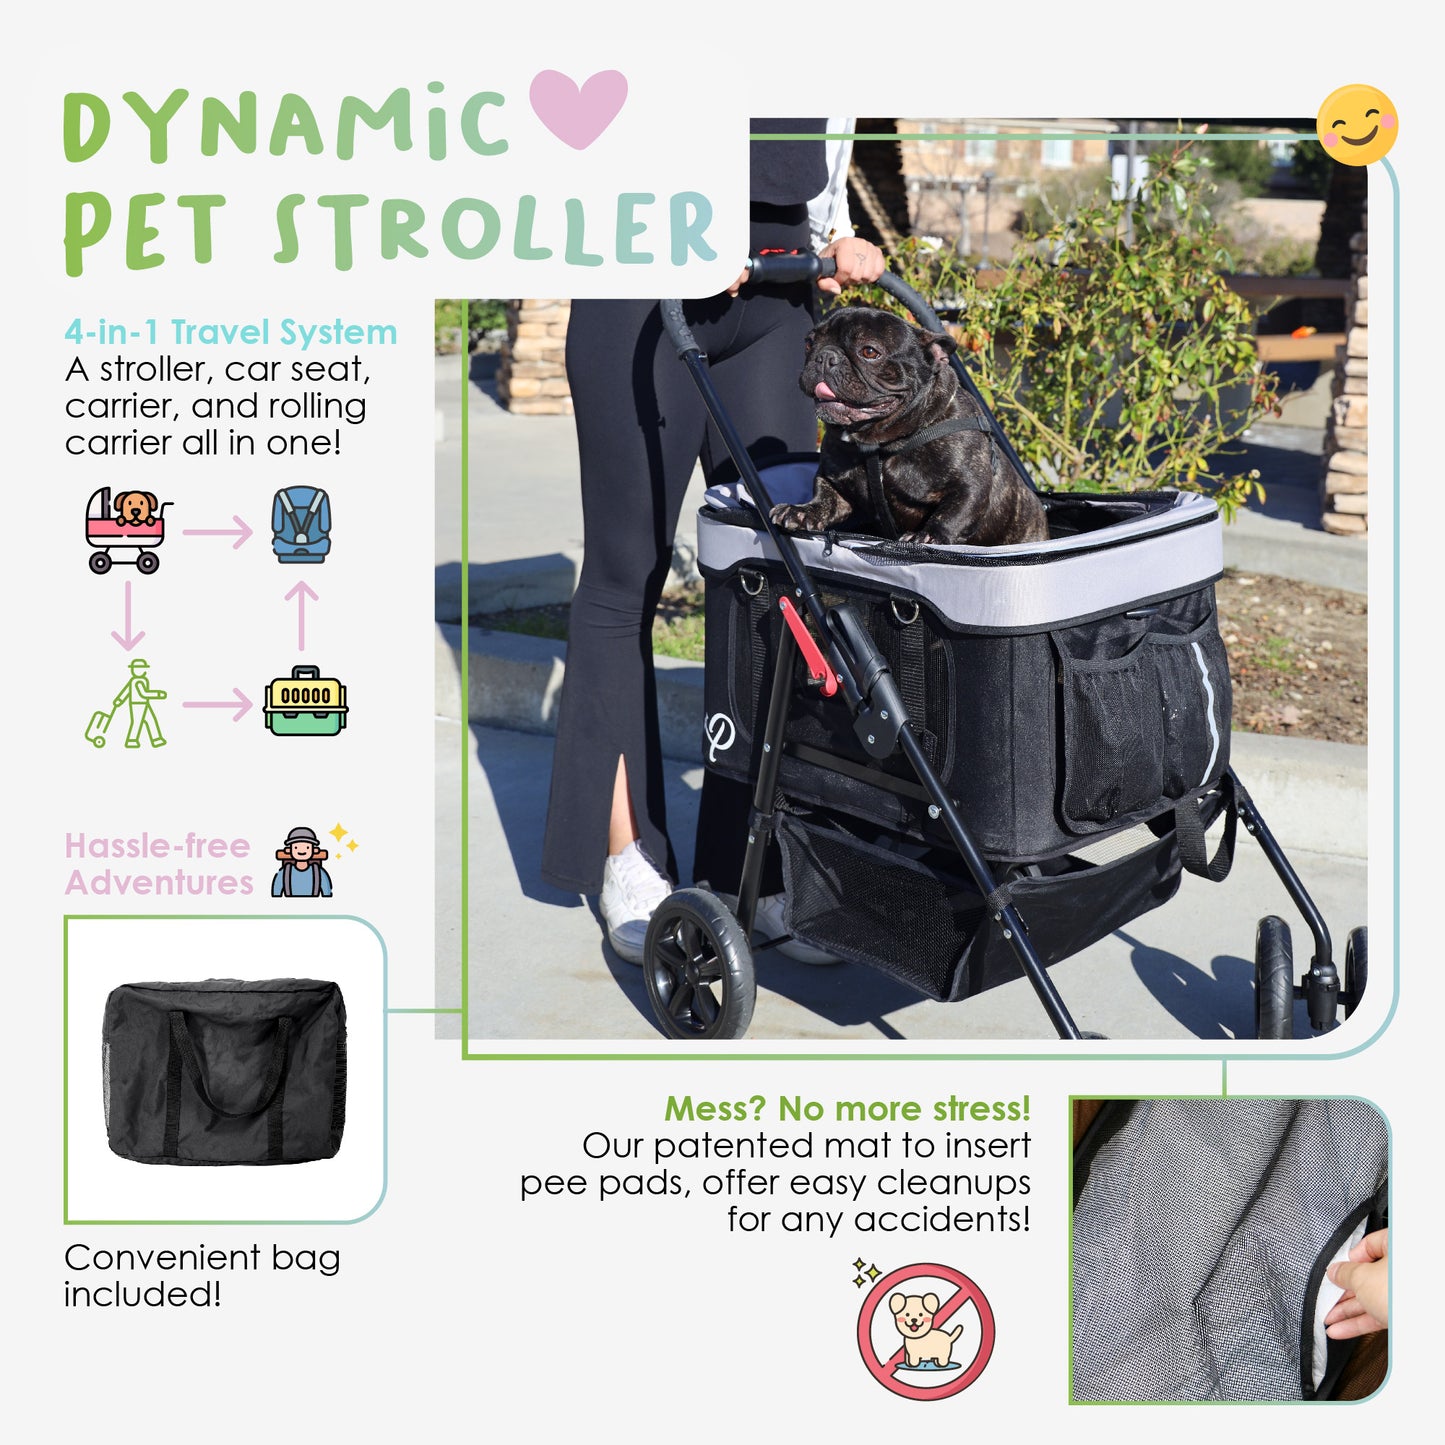 about petique's dynamic pet stroller